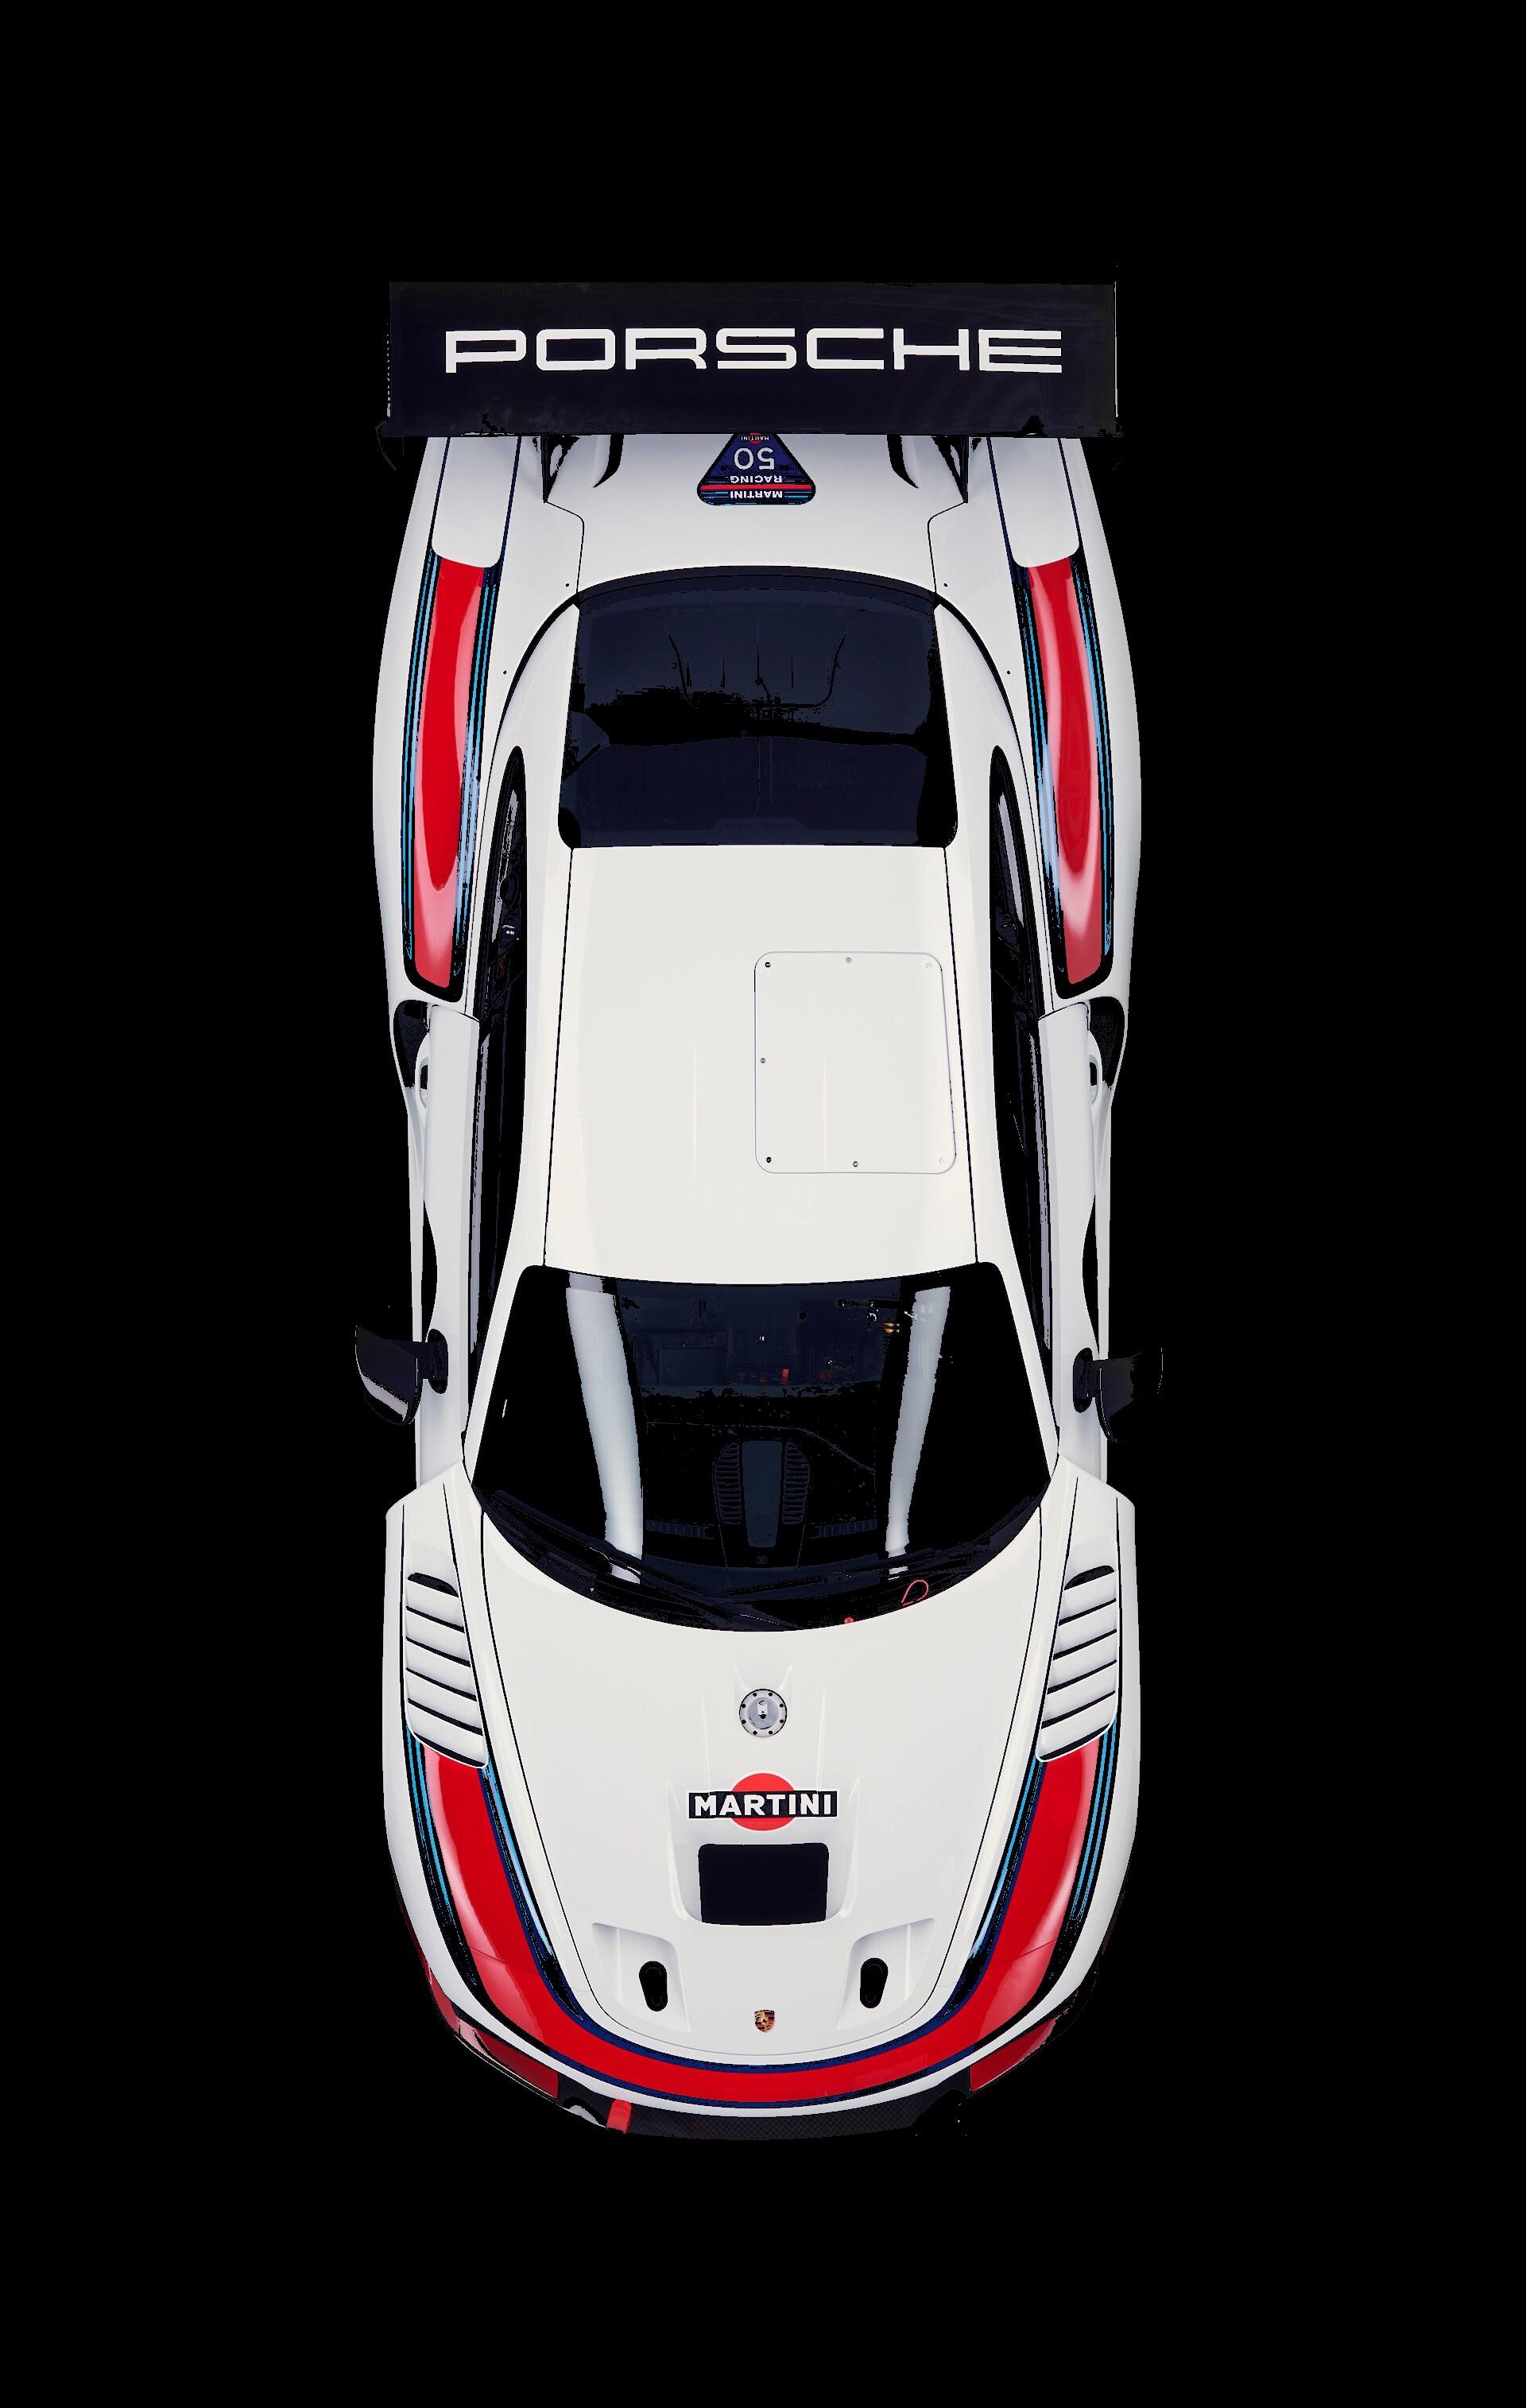 935 Porsche 2019 Martini - HD Wallpaper 